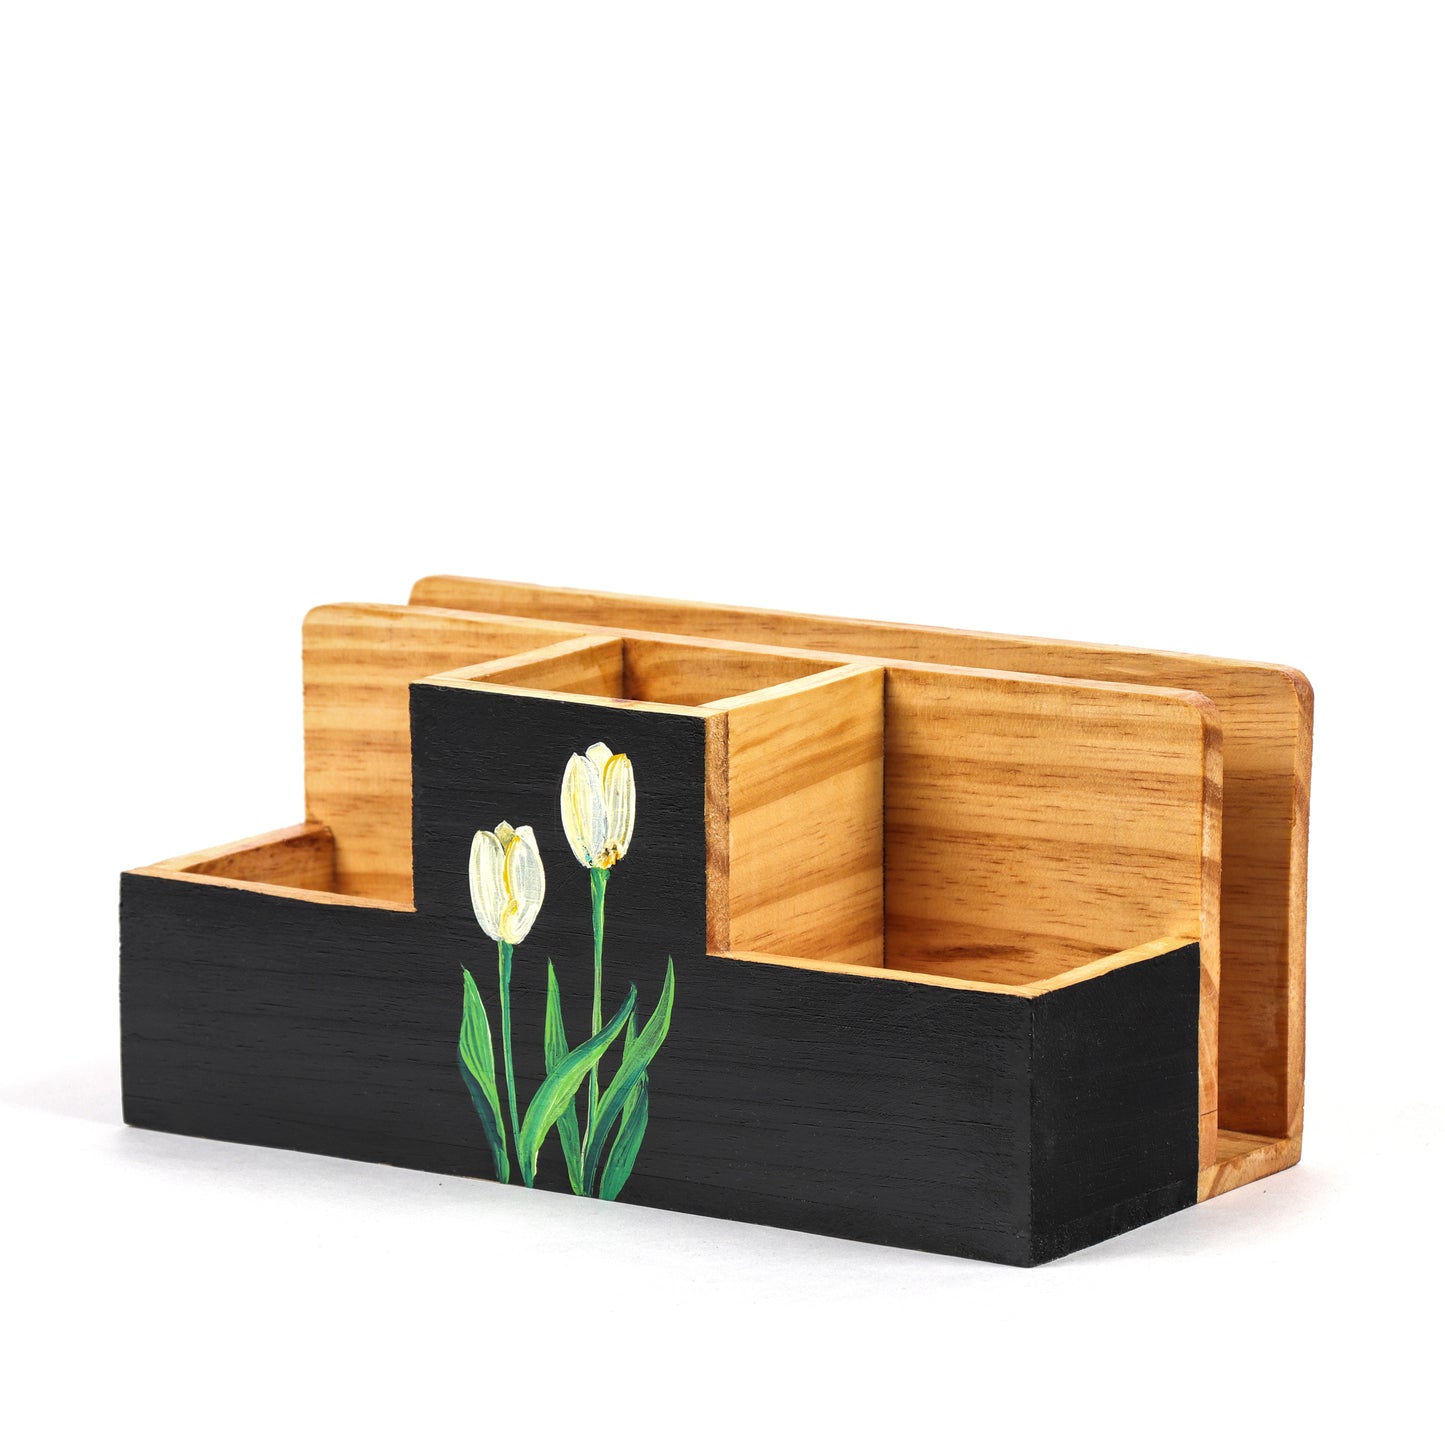 Unblended Petals - Large Size 4 Compartment Petal deign Wooden Desk Organizer